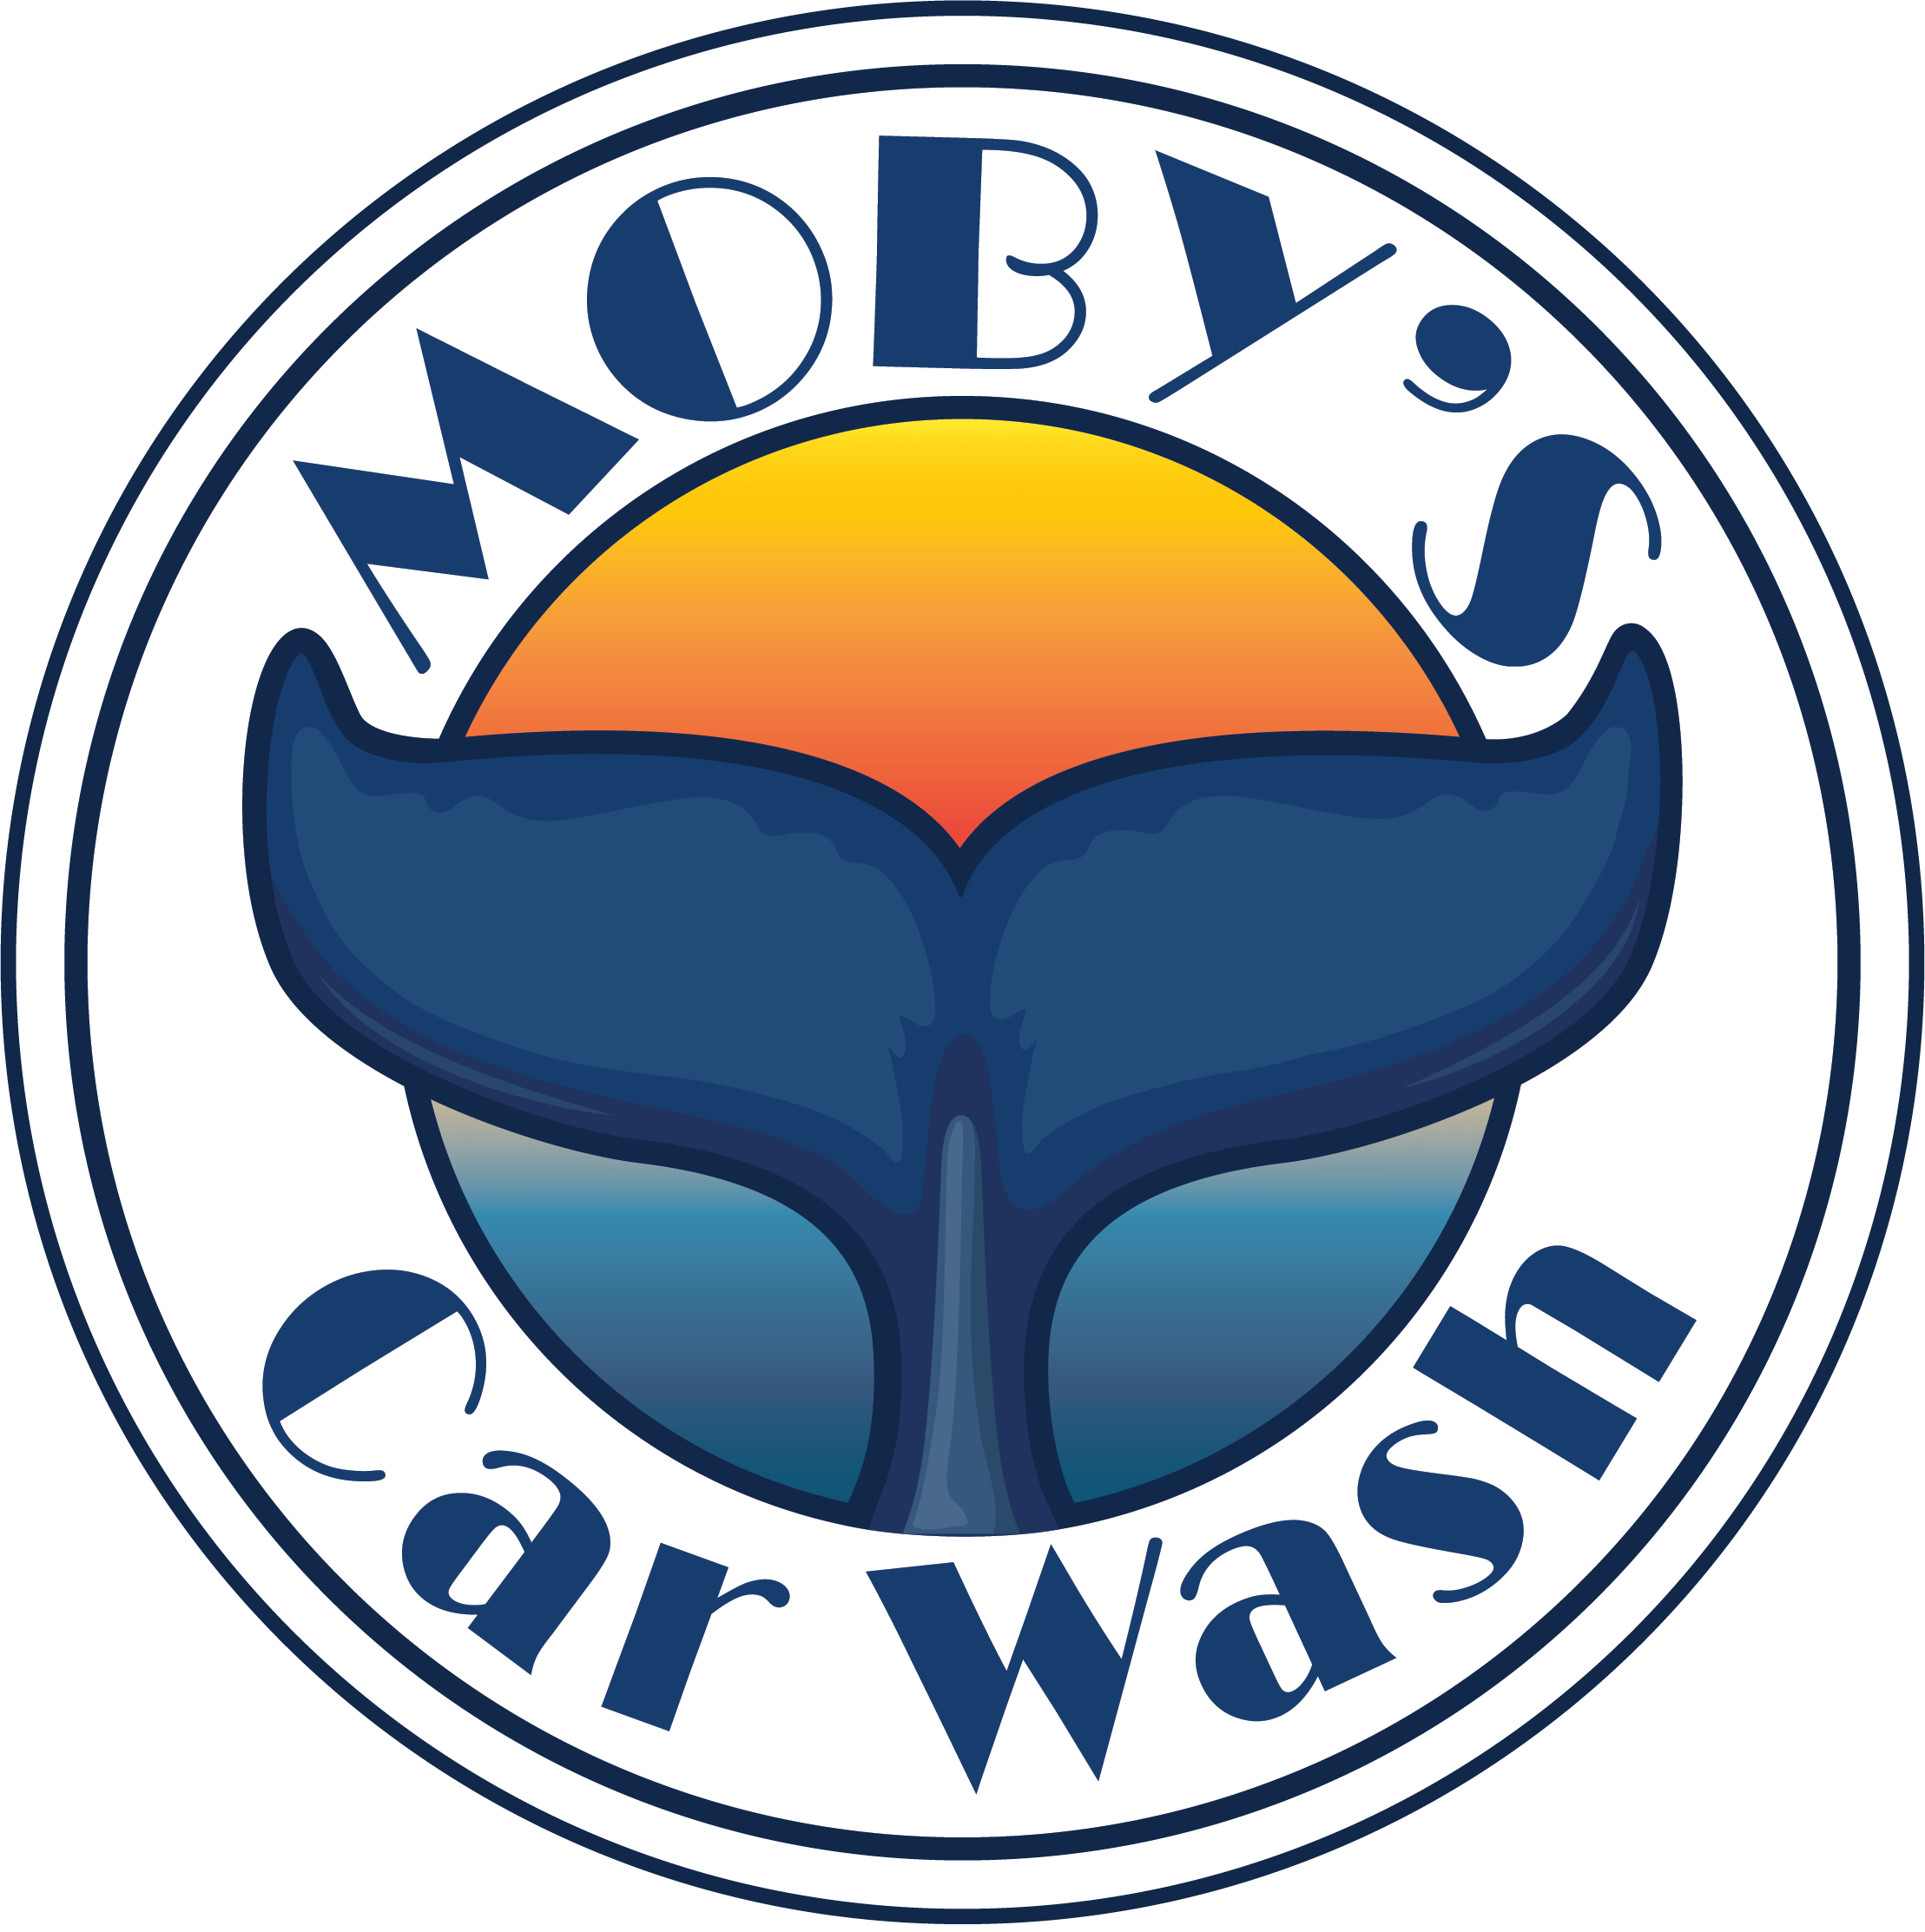 Mobys Car Wash